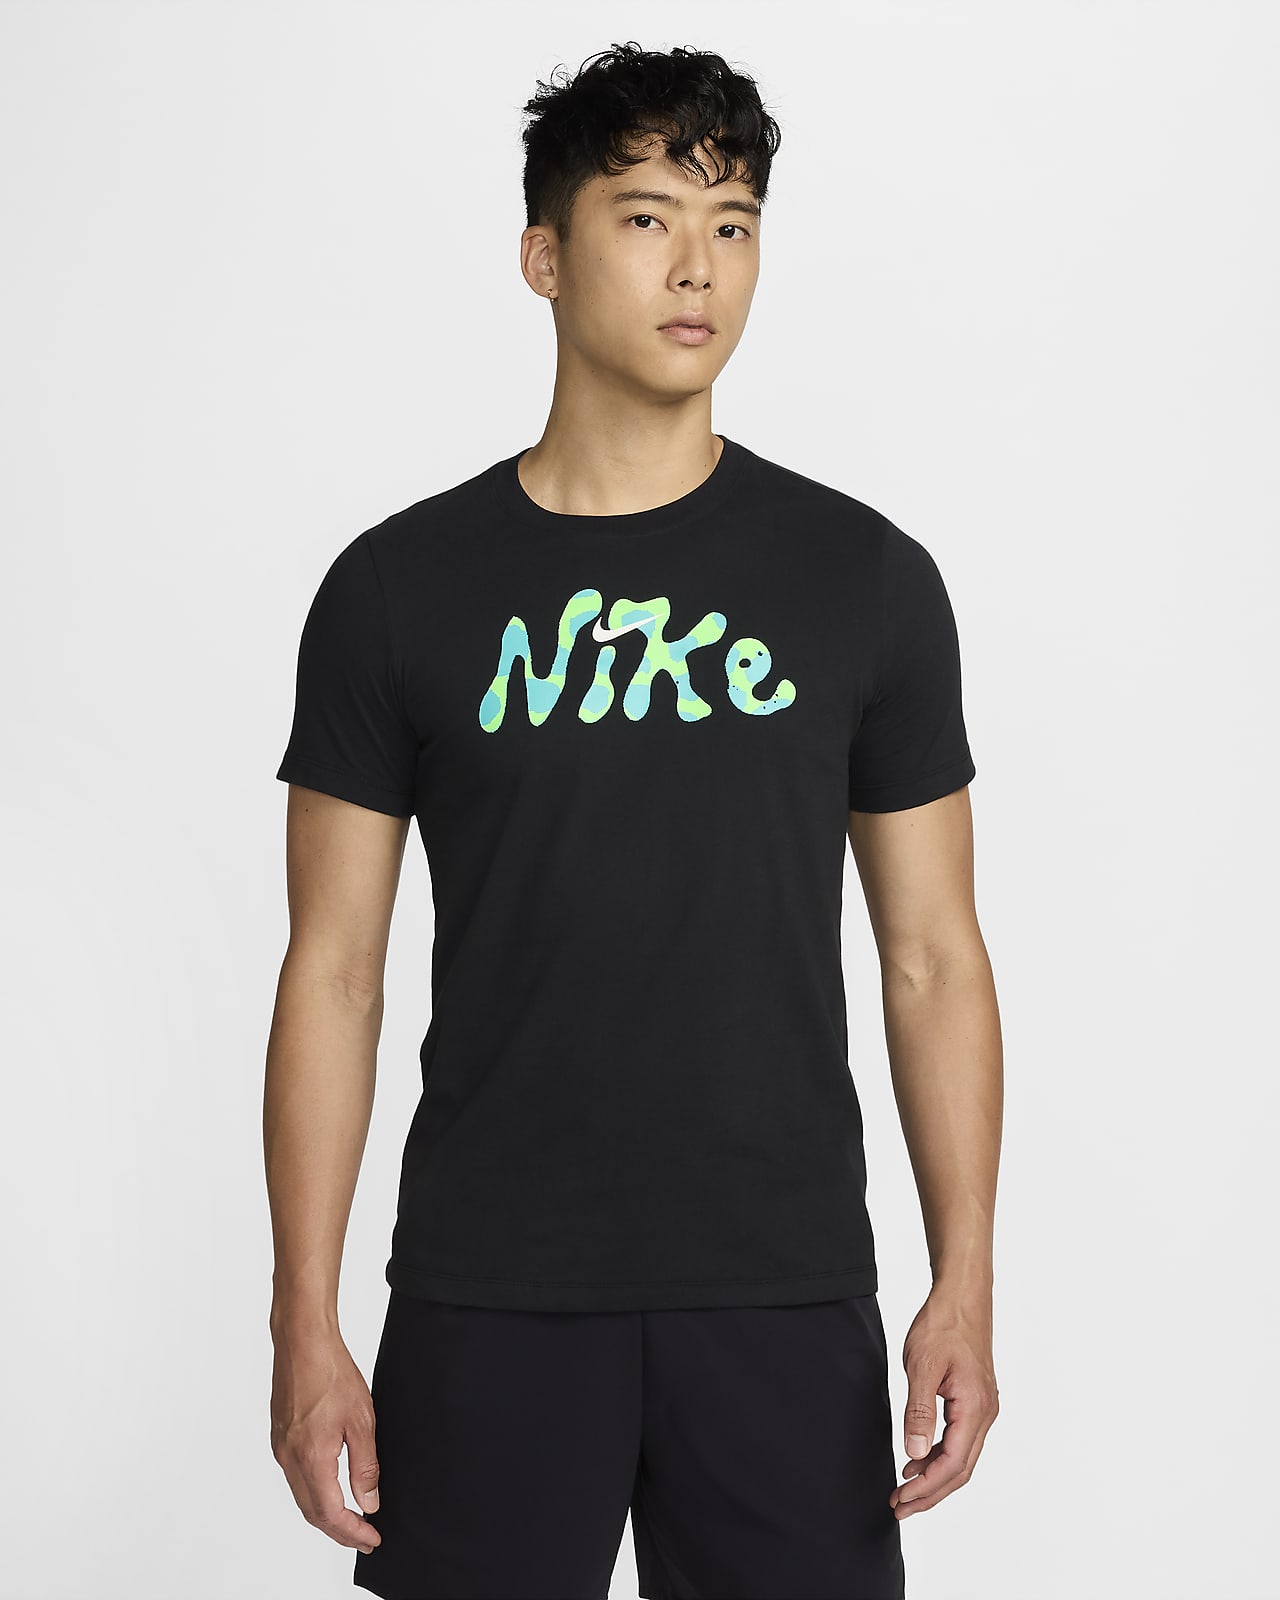 NIKE公式】ナイキ Dri-FITメンズ フィットネス Tシャツ.オンライン ...